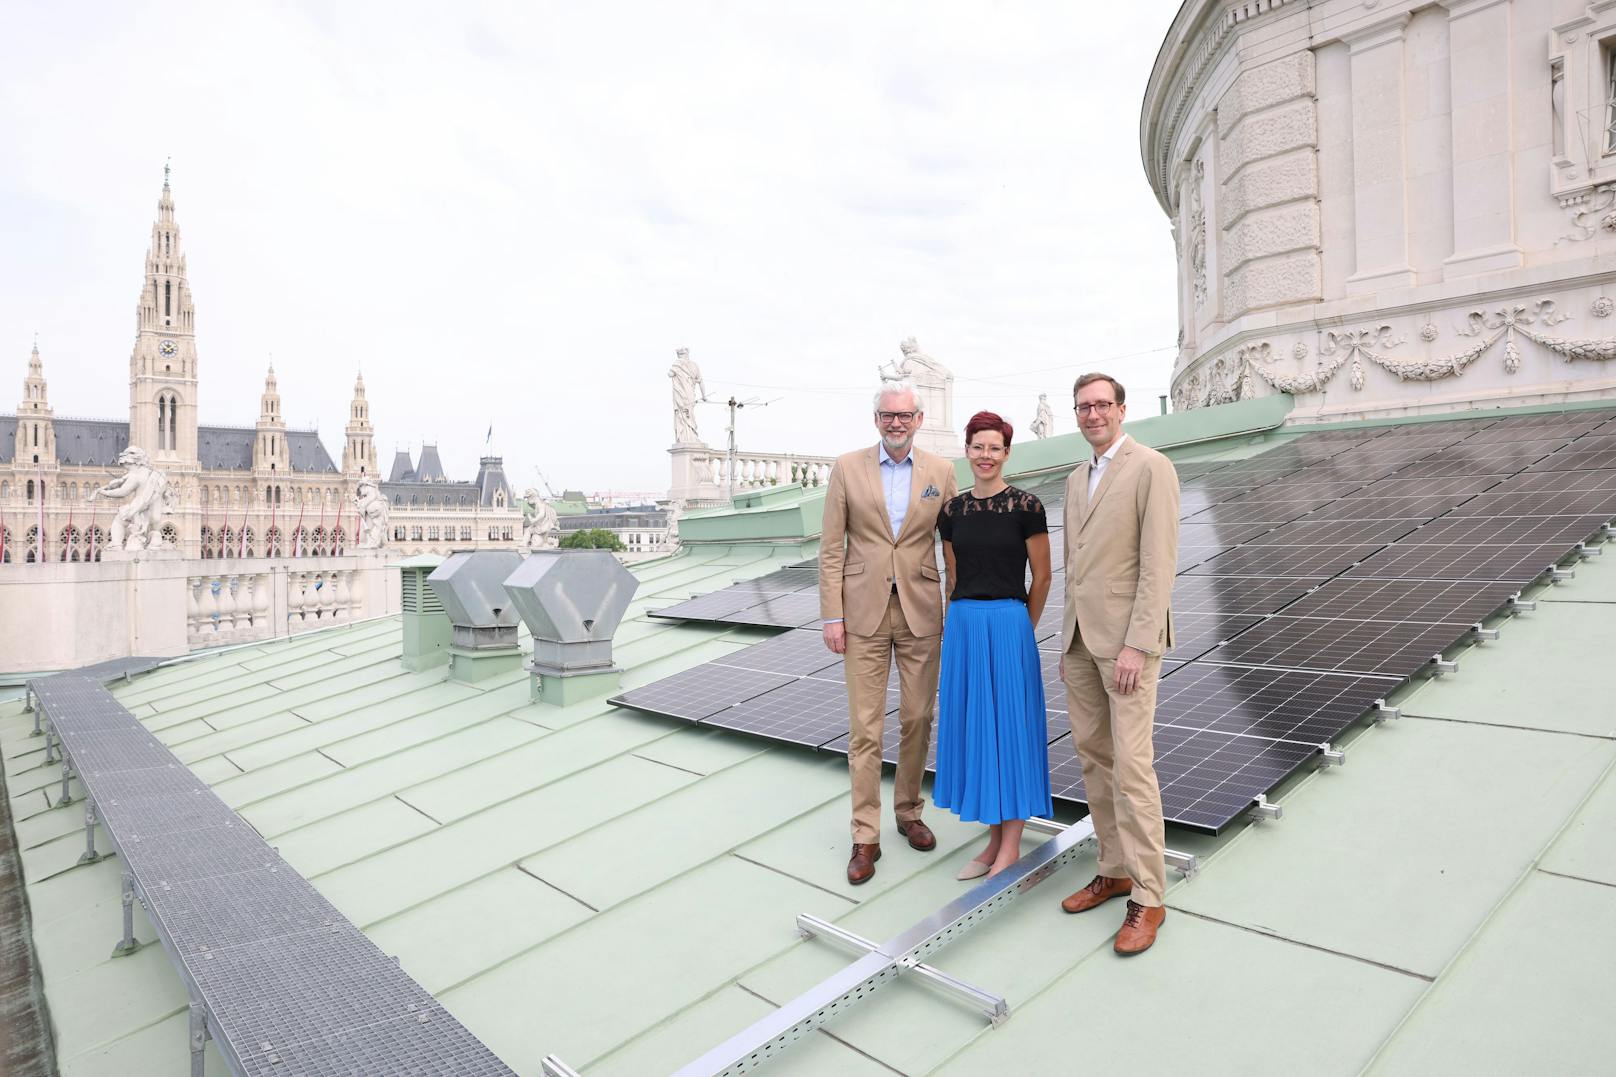 Bühne frei für Solarenergie vom Dach des Burgtheaters